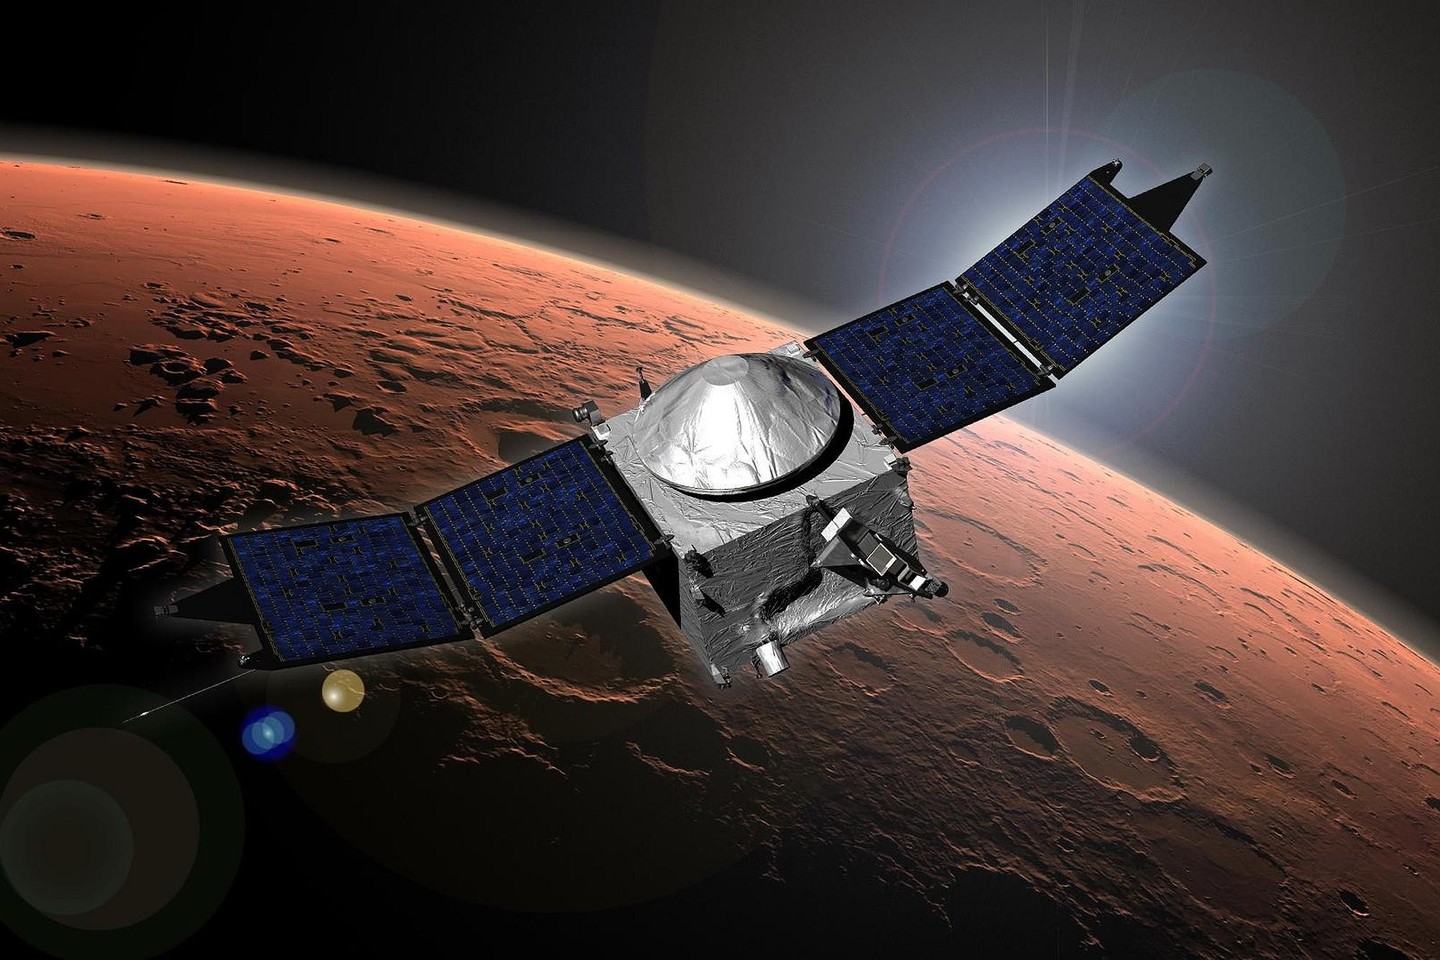 Indijos kosminė agentūra nuskraidino savo palydovą į Marsą vos už 74 milijonus dolerių. <br> "Pratidin Time" iliustr.